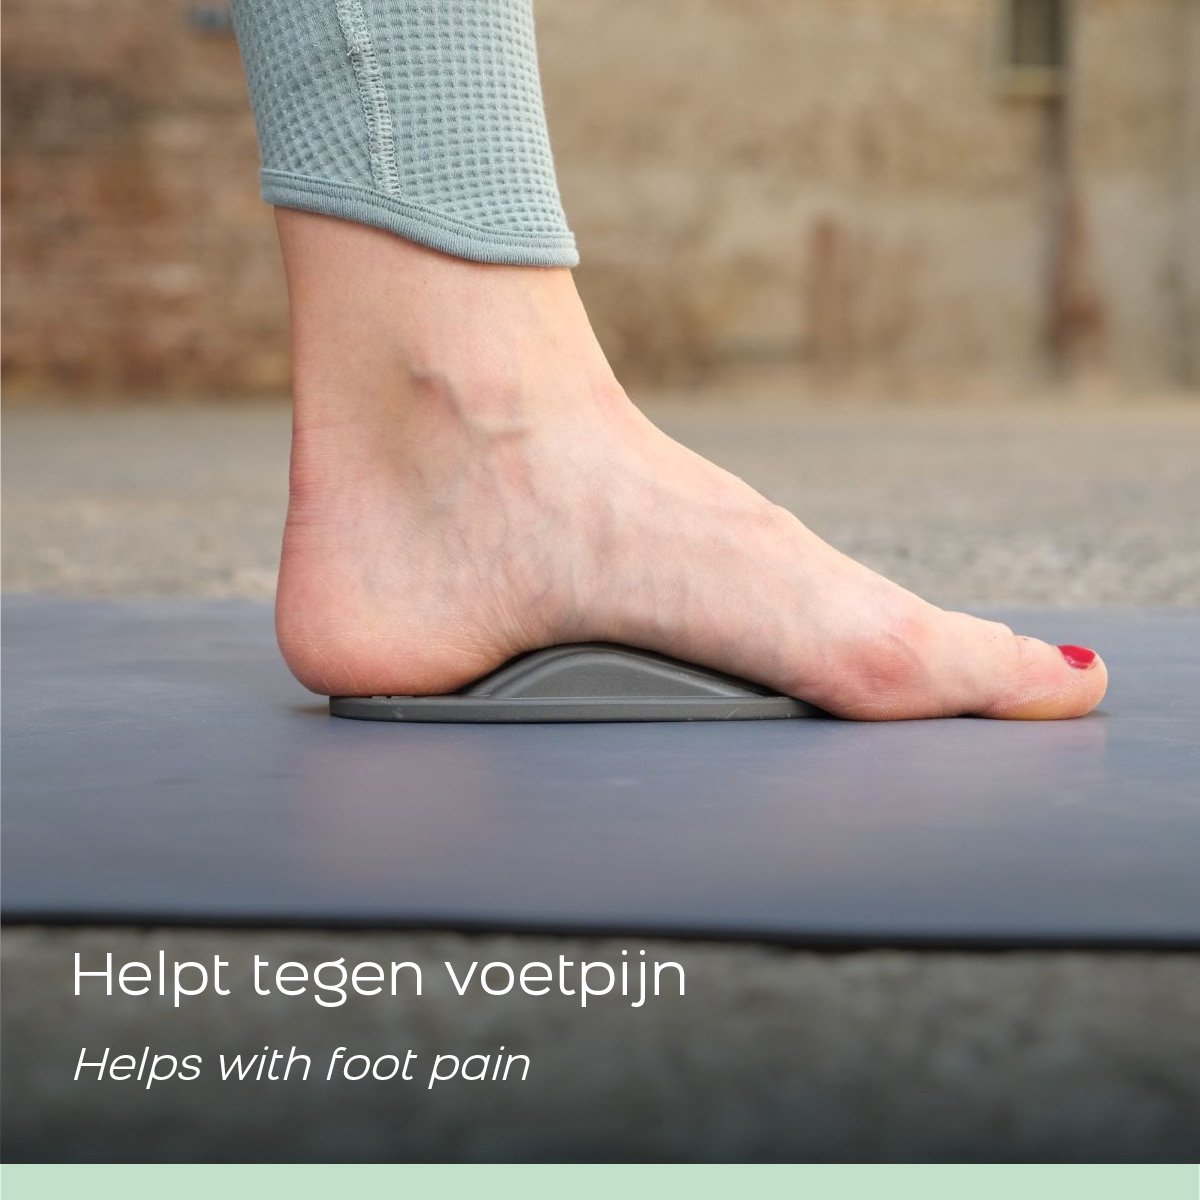 TMX META, Voettrigger - Trigger voor het verhelpen van voetpijn - Triggerpoint Zool - Drukpunten Massage tool voor voeten - Verlicht pijn, spanning en blokkades - Inclusief gratis app